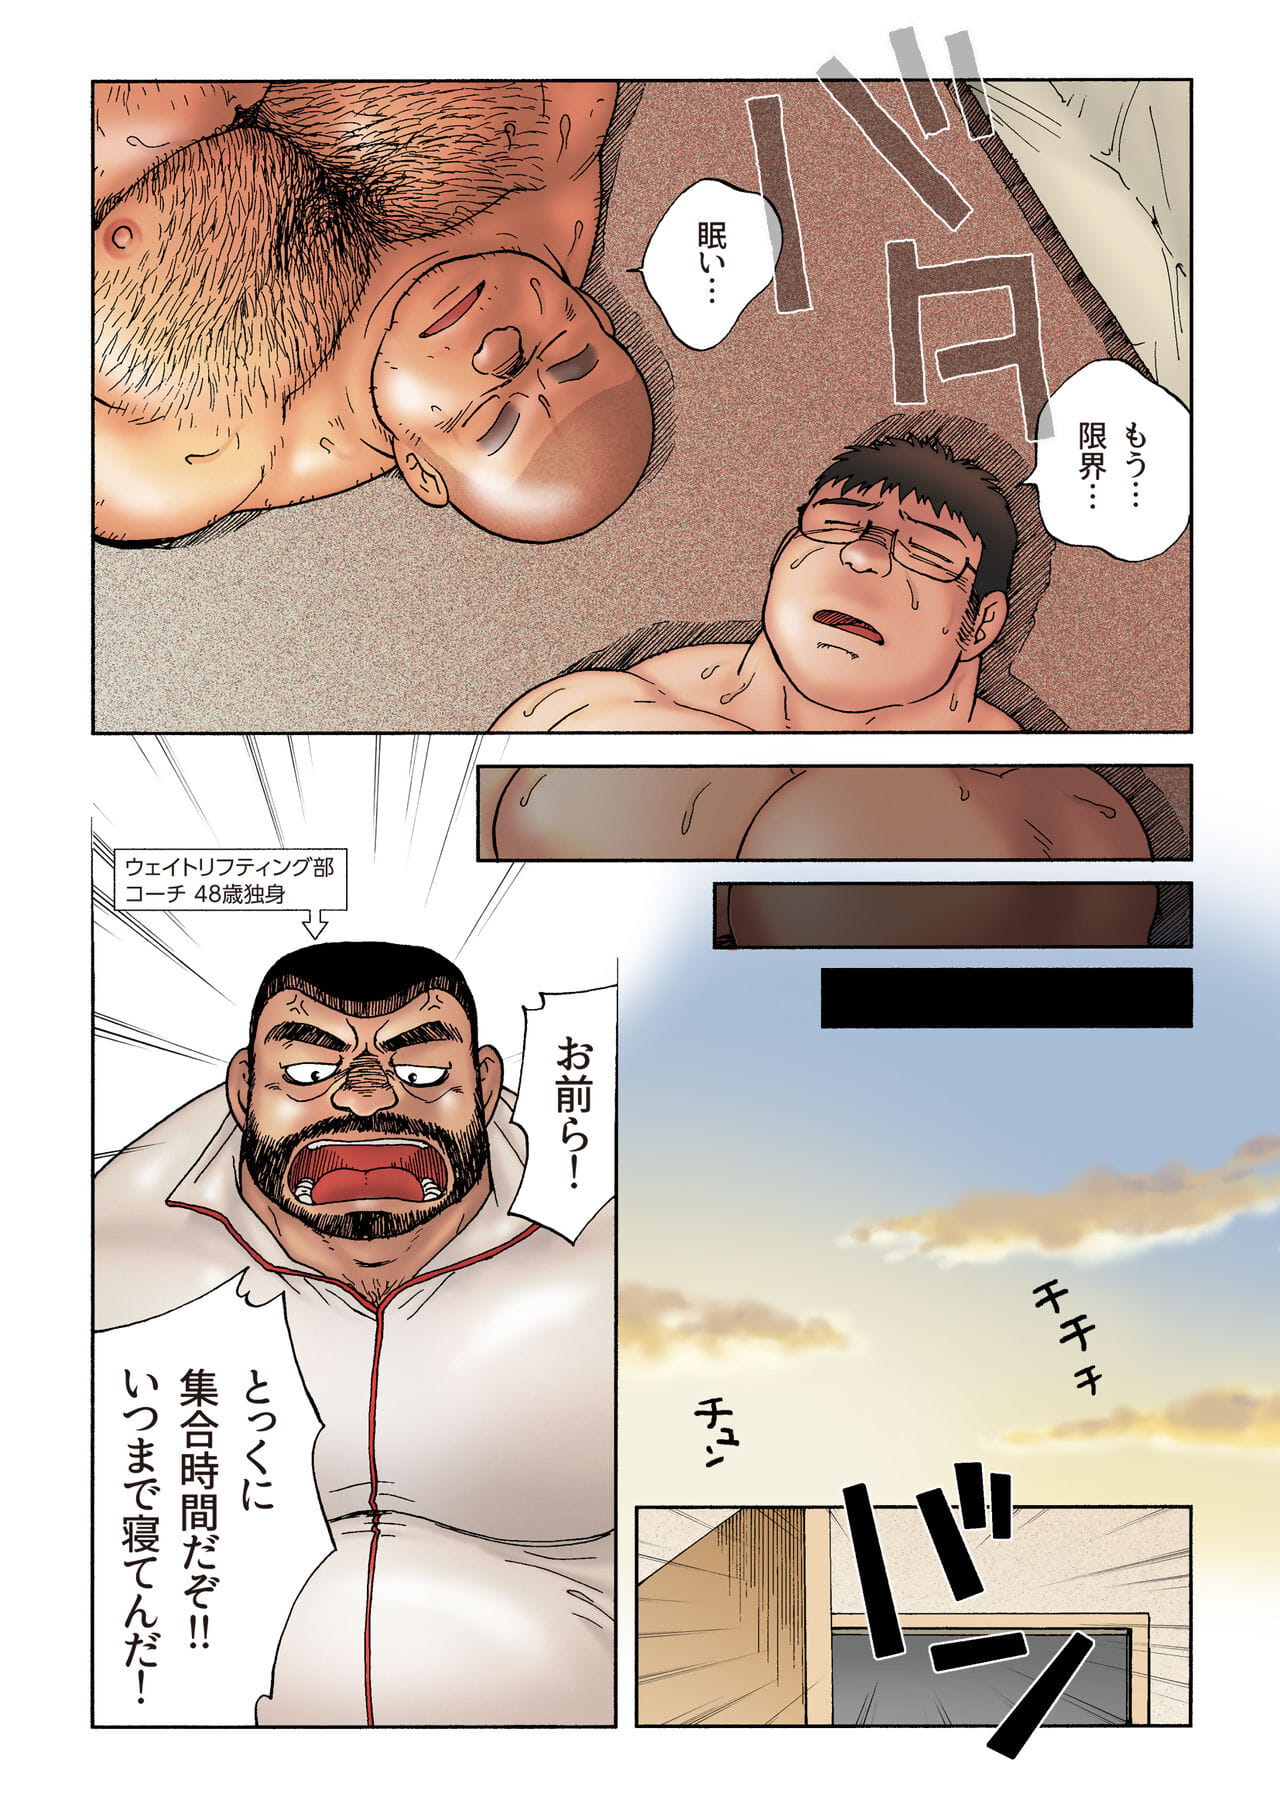 漫画以及动画之中 koukousei 举重运动员 泰开 去 没有 酒店 德 没有 葵 夜的 一部分 2 page 1